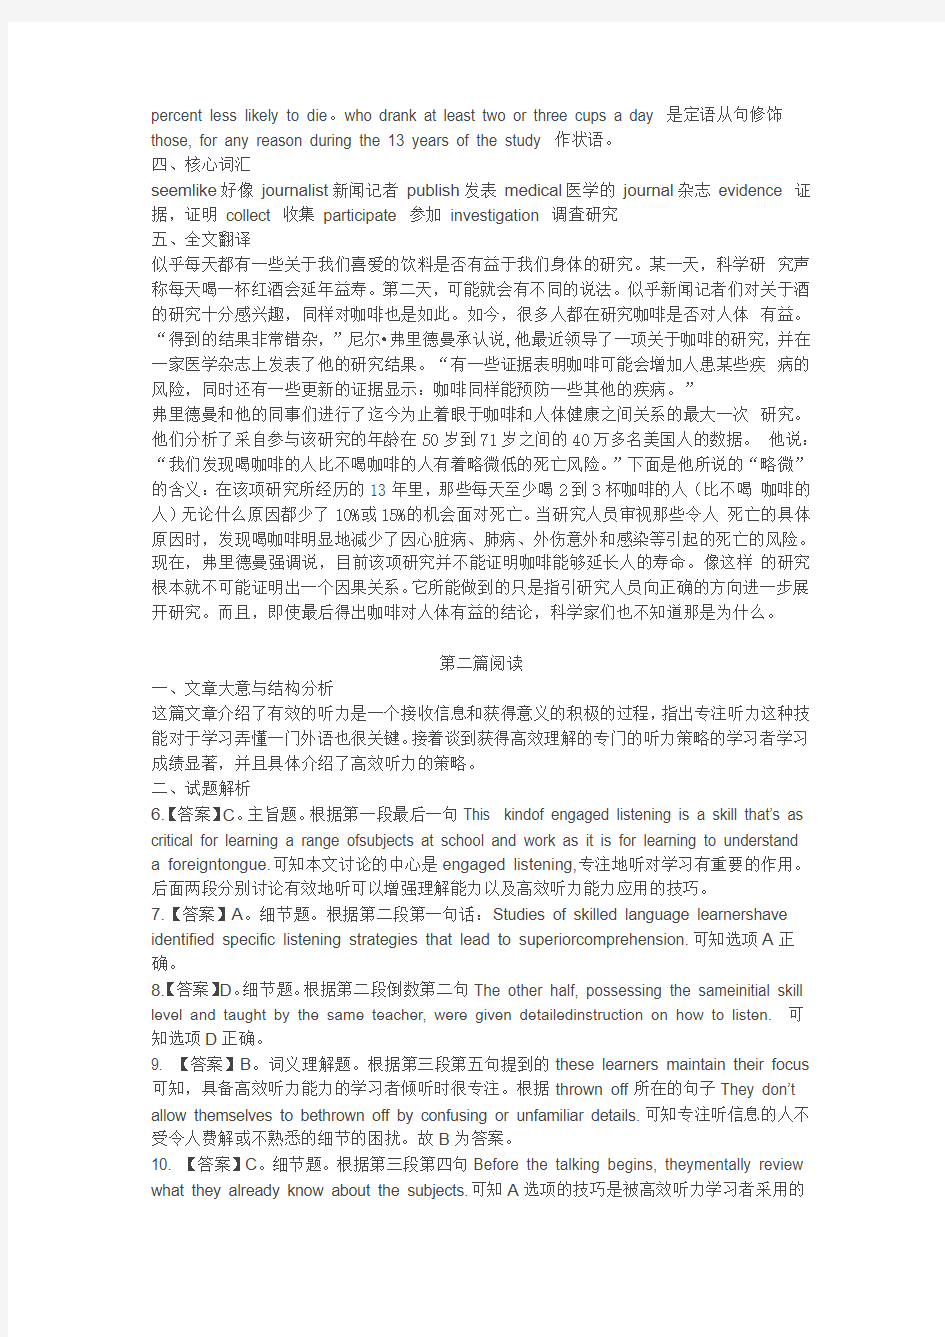 2012年11月北京地区成人英语三级考试真题及答案详解